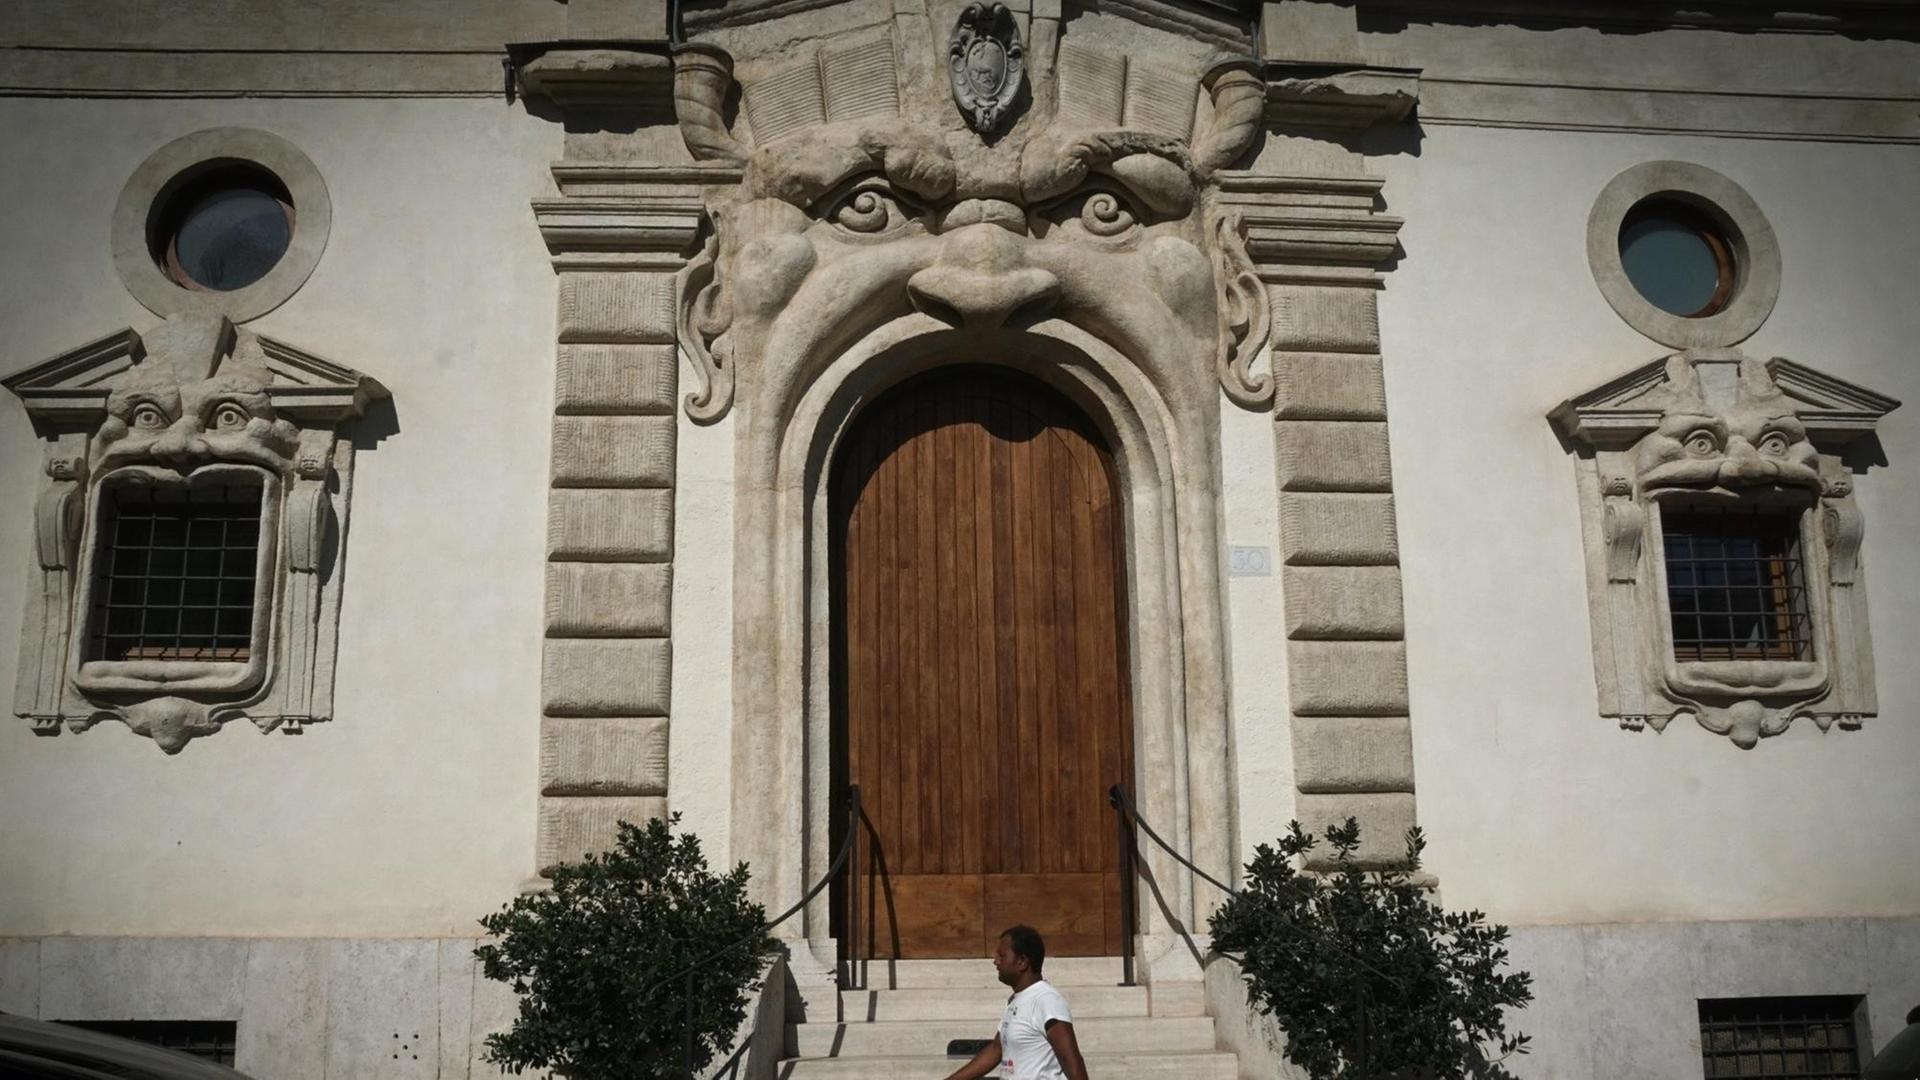 Ein Passant geht am Palazzo Zuccari vorbei, dessen Eingangstür und Fenster wie Münder von Gesichtern geformt sind.